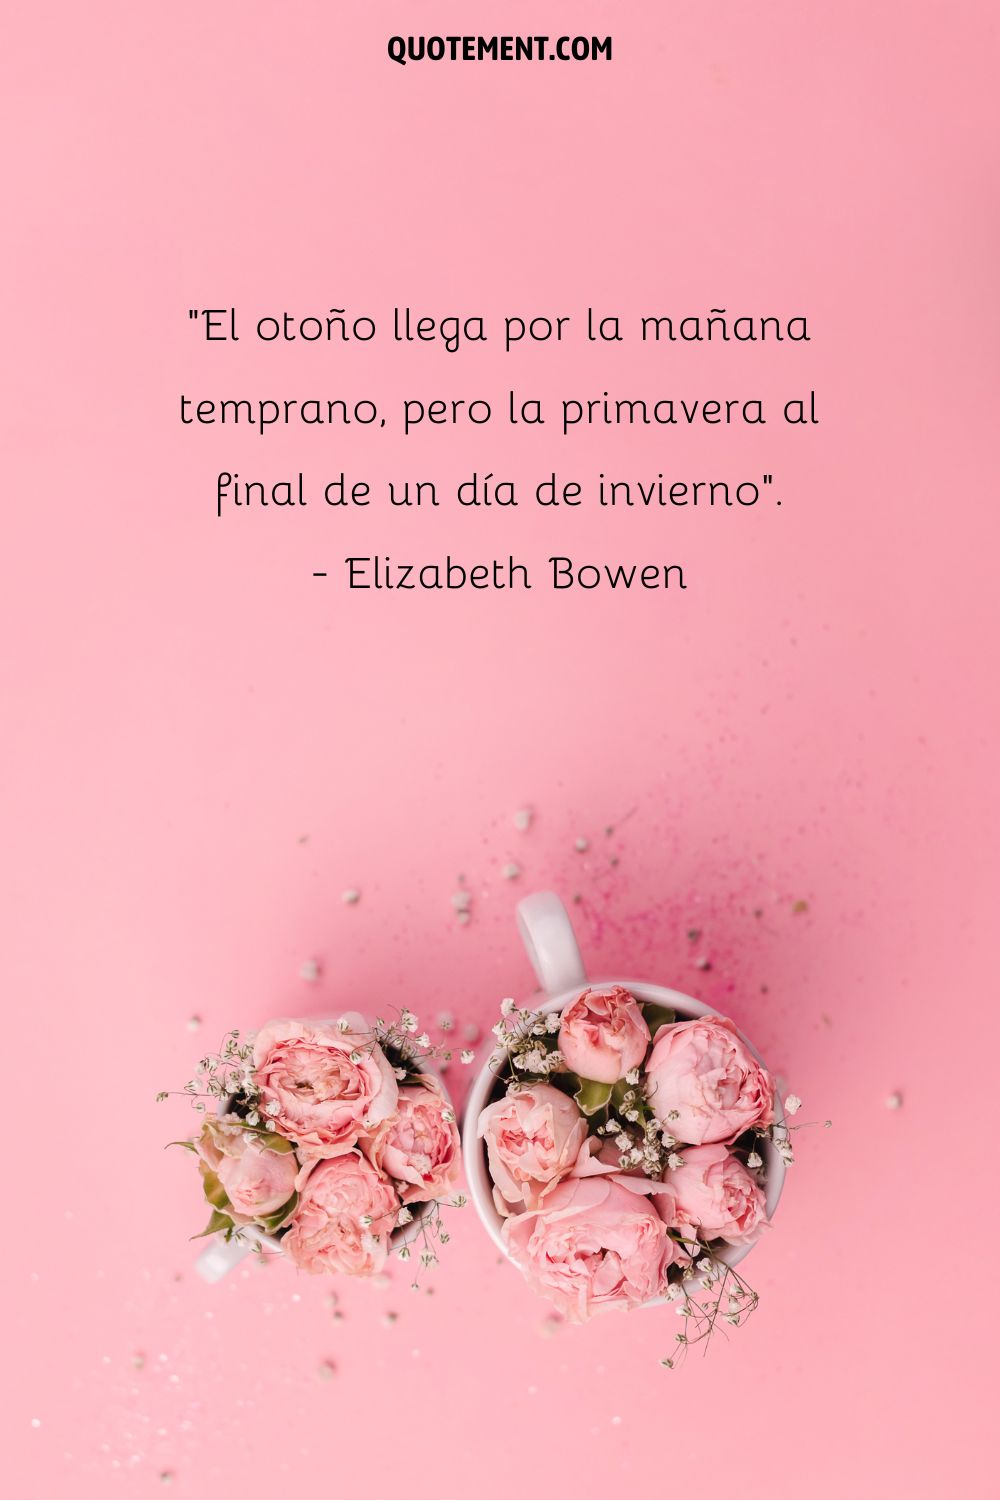 El otoño llega por la mañana temprano, pero la primavera al final de un día de invierno. - Elizabeth Bowen